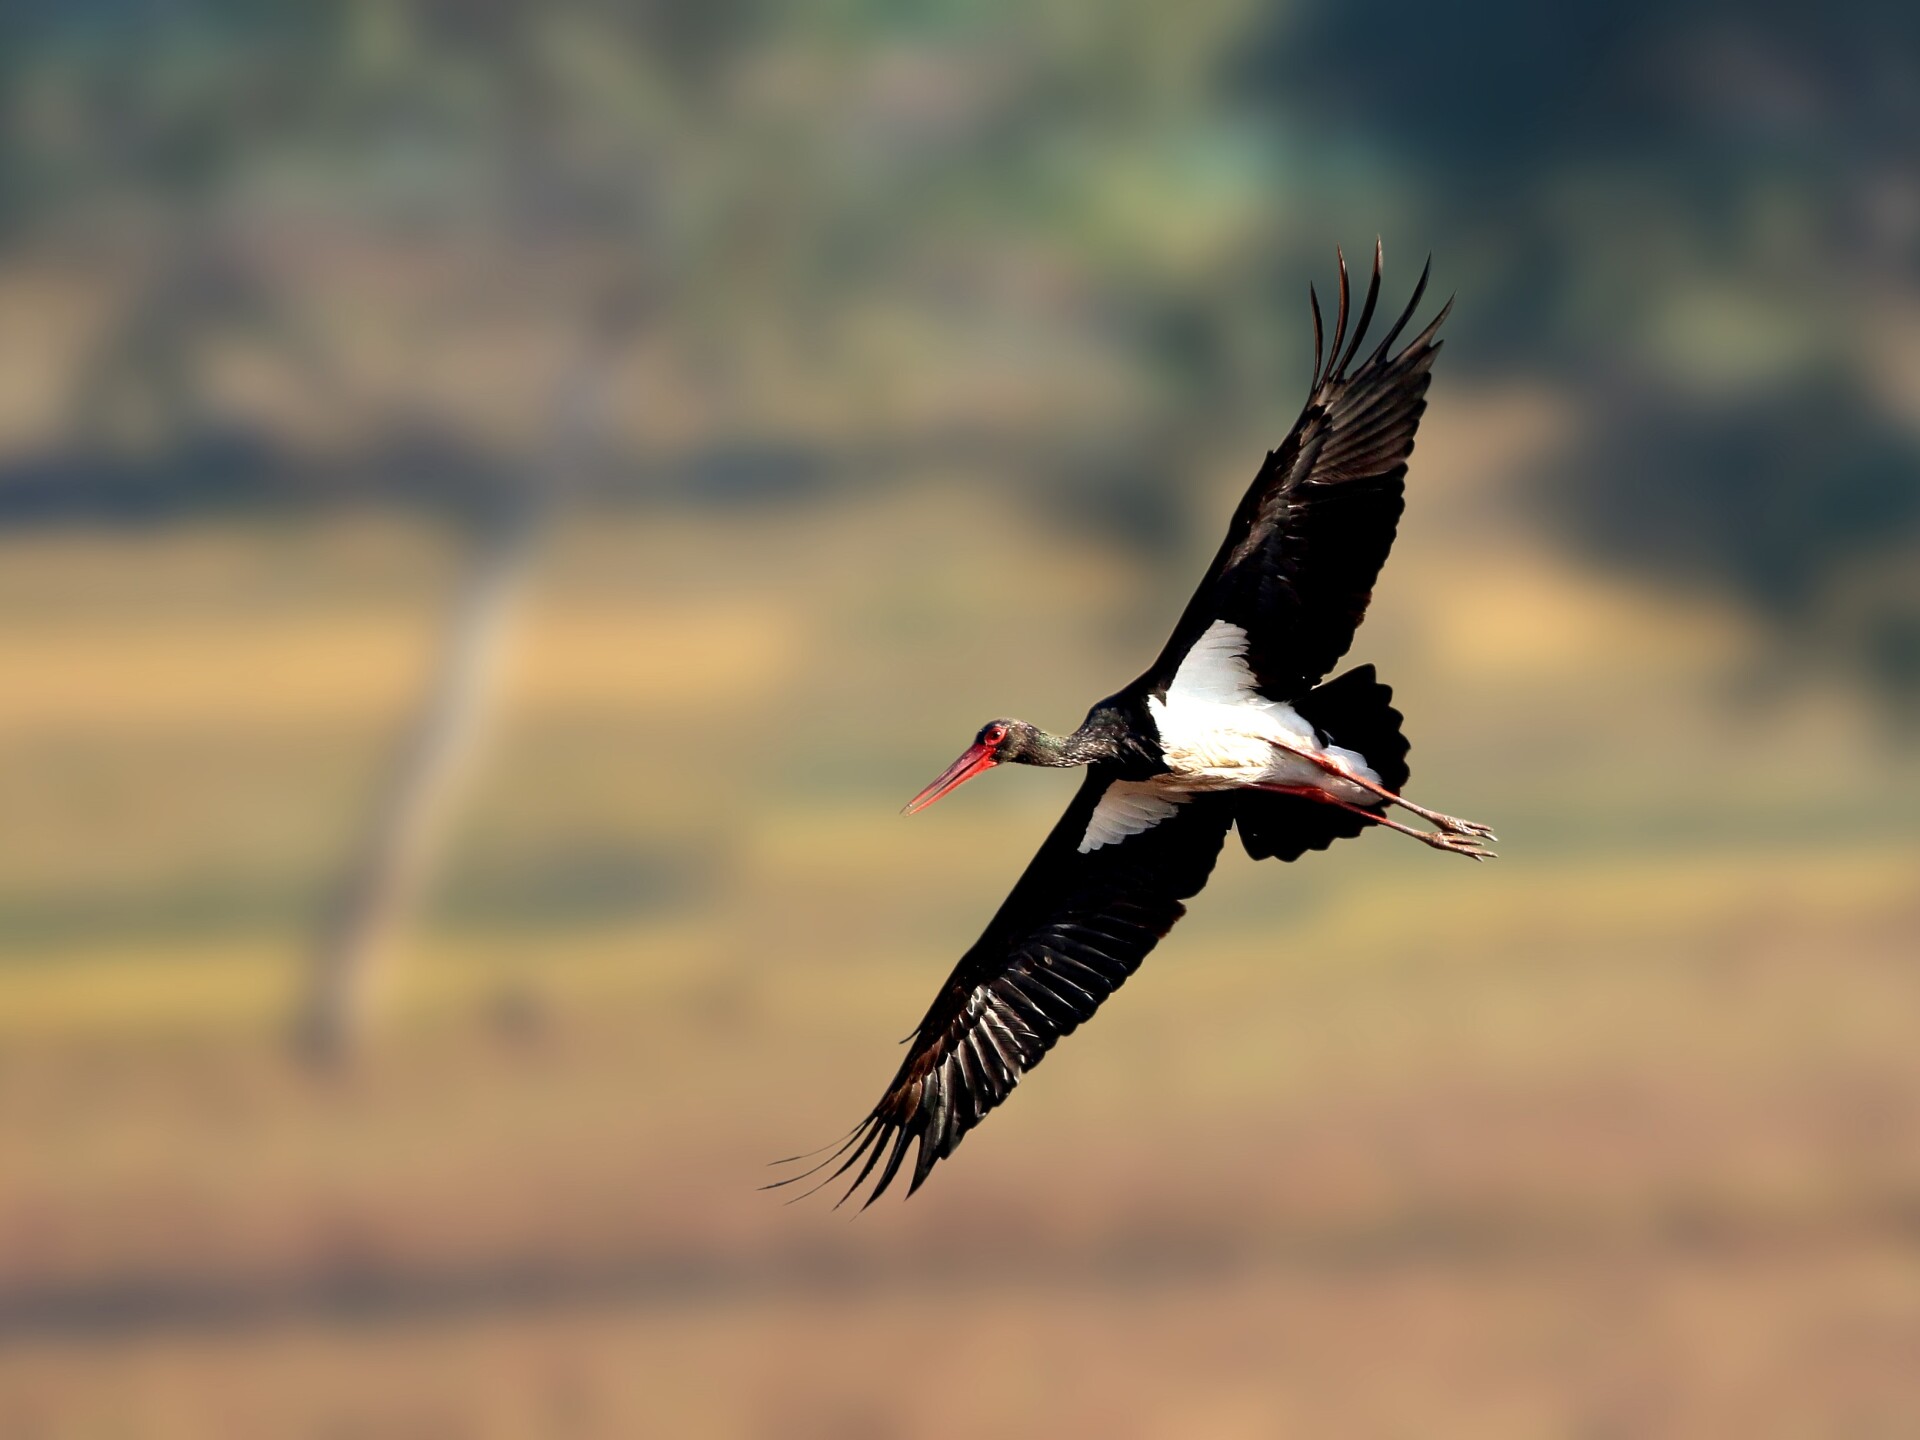 Poster-bird 2021: Black Stork